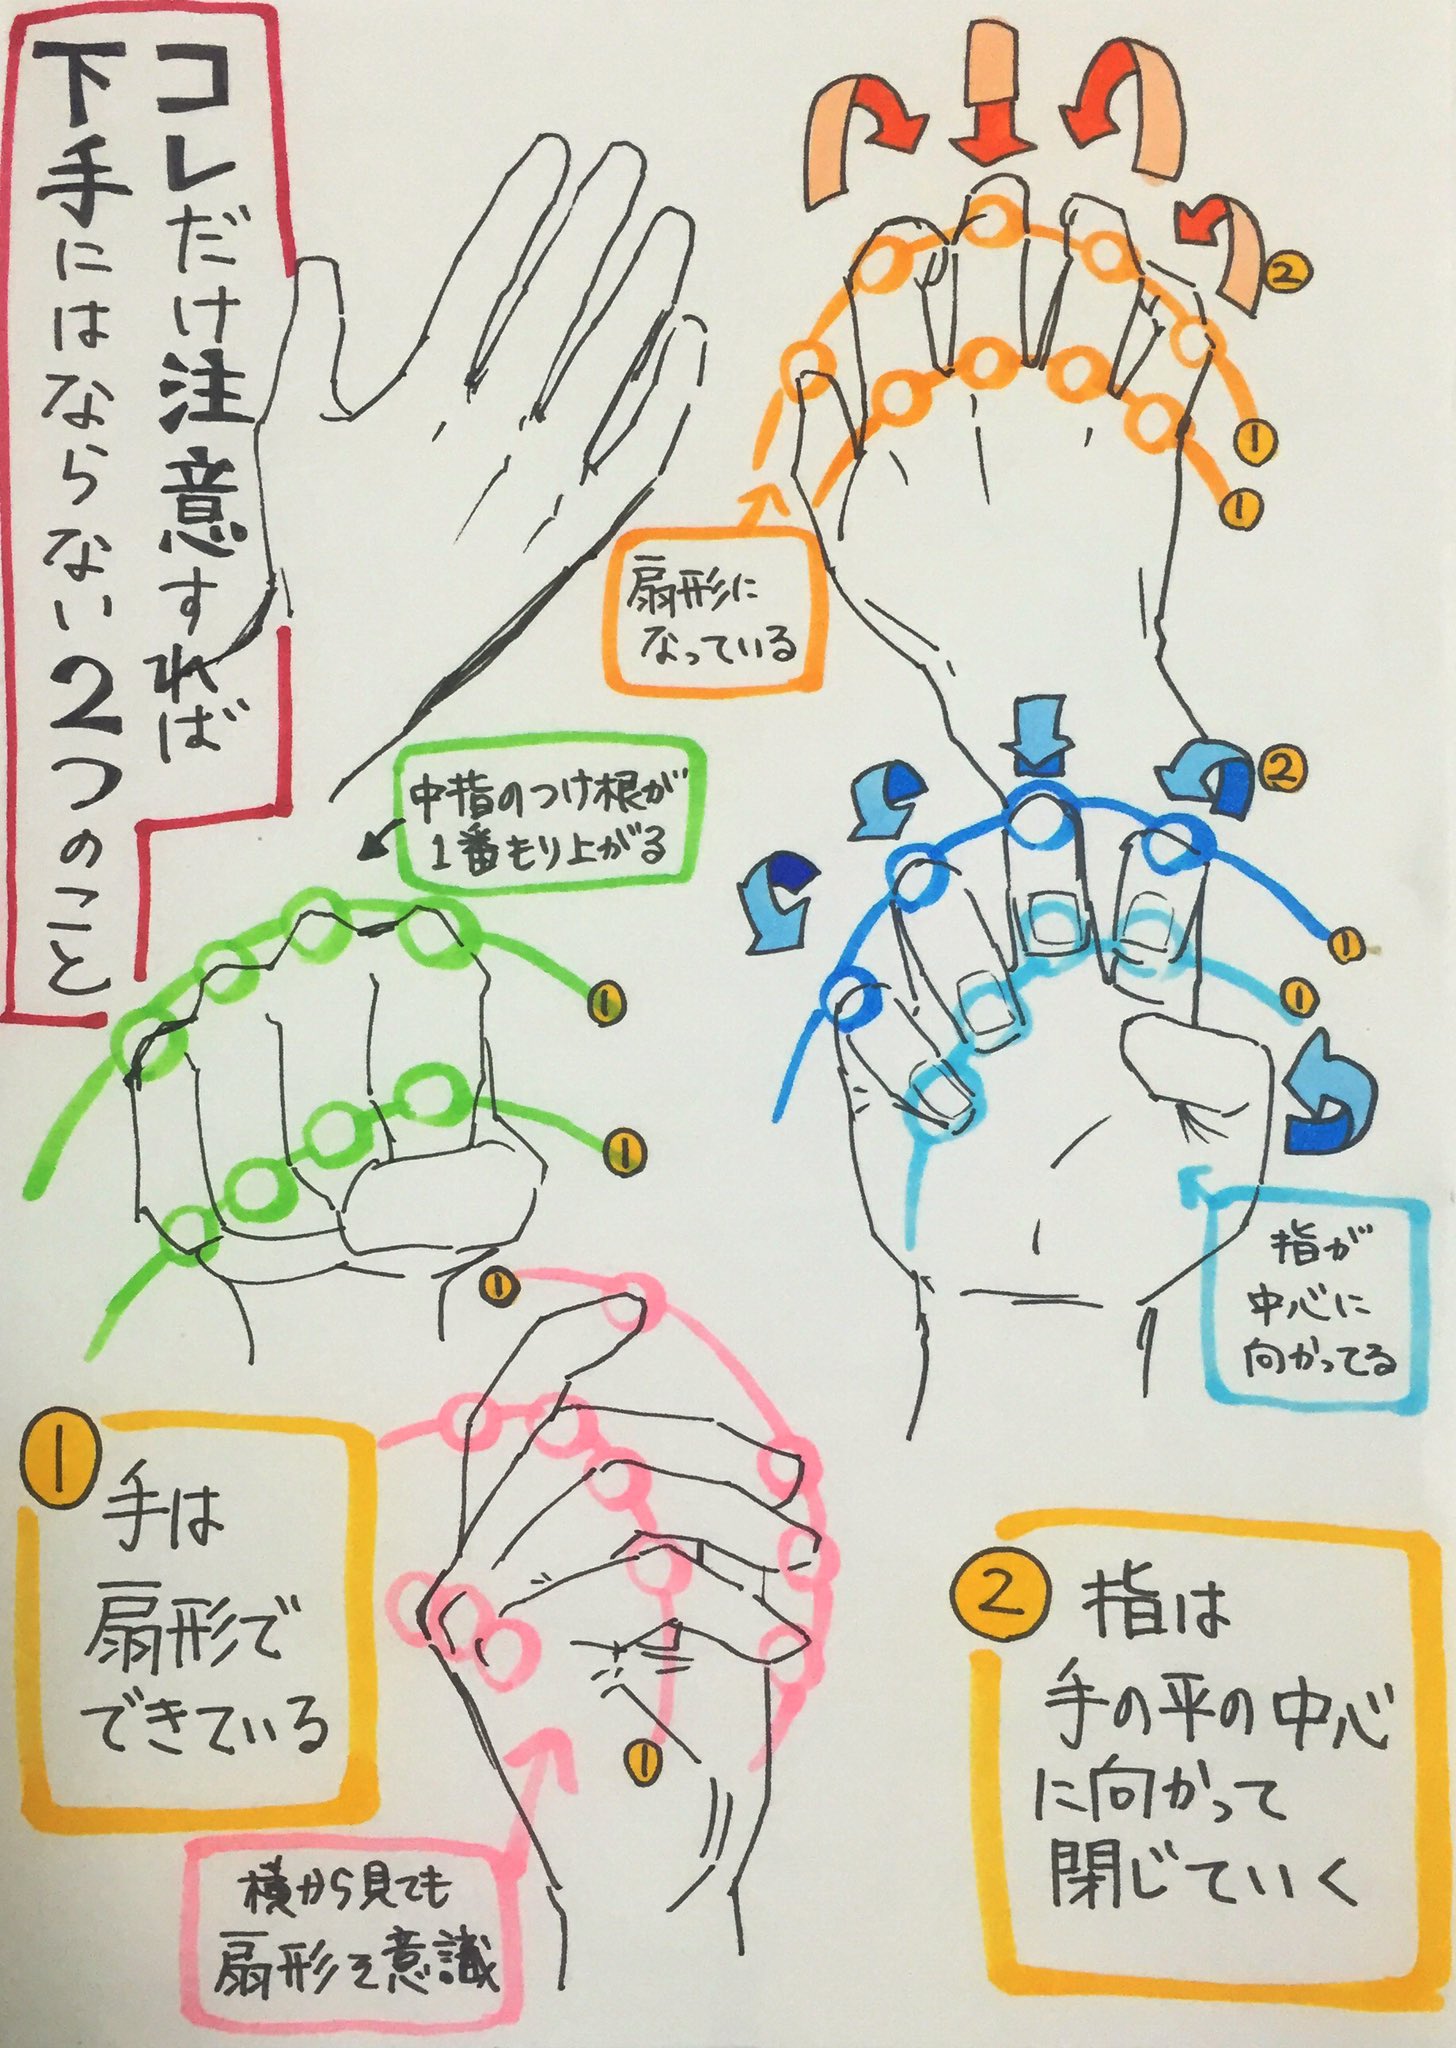 吉村拓也 イラスト講座 男性と女性の手の違い の5カ条 手の関節はカーブ上に並べると良い 手はグーに握っていくと 手の平の中央へ向かうように閉じていく 1枚目のピンクの手の様に 螺旋階段のようなイメージで描くと手が映える 男の爪は